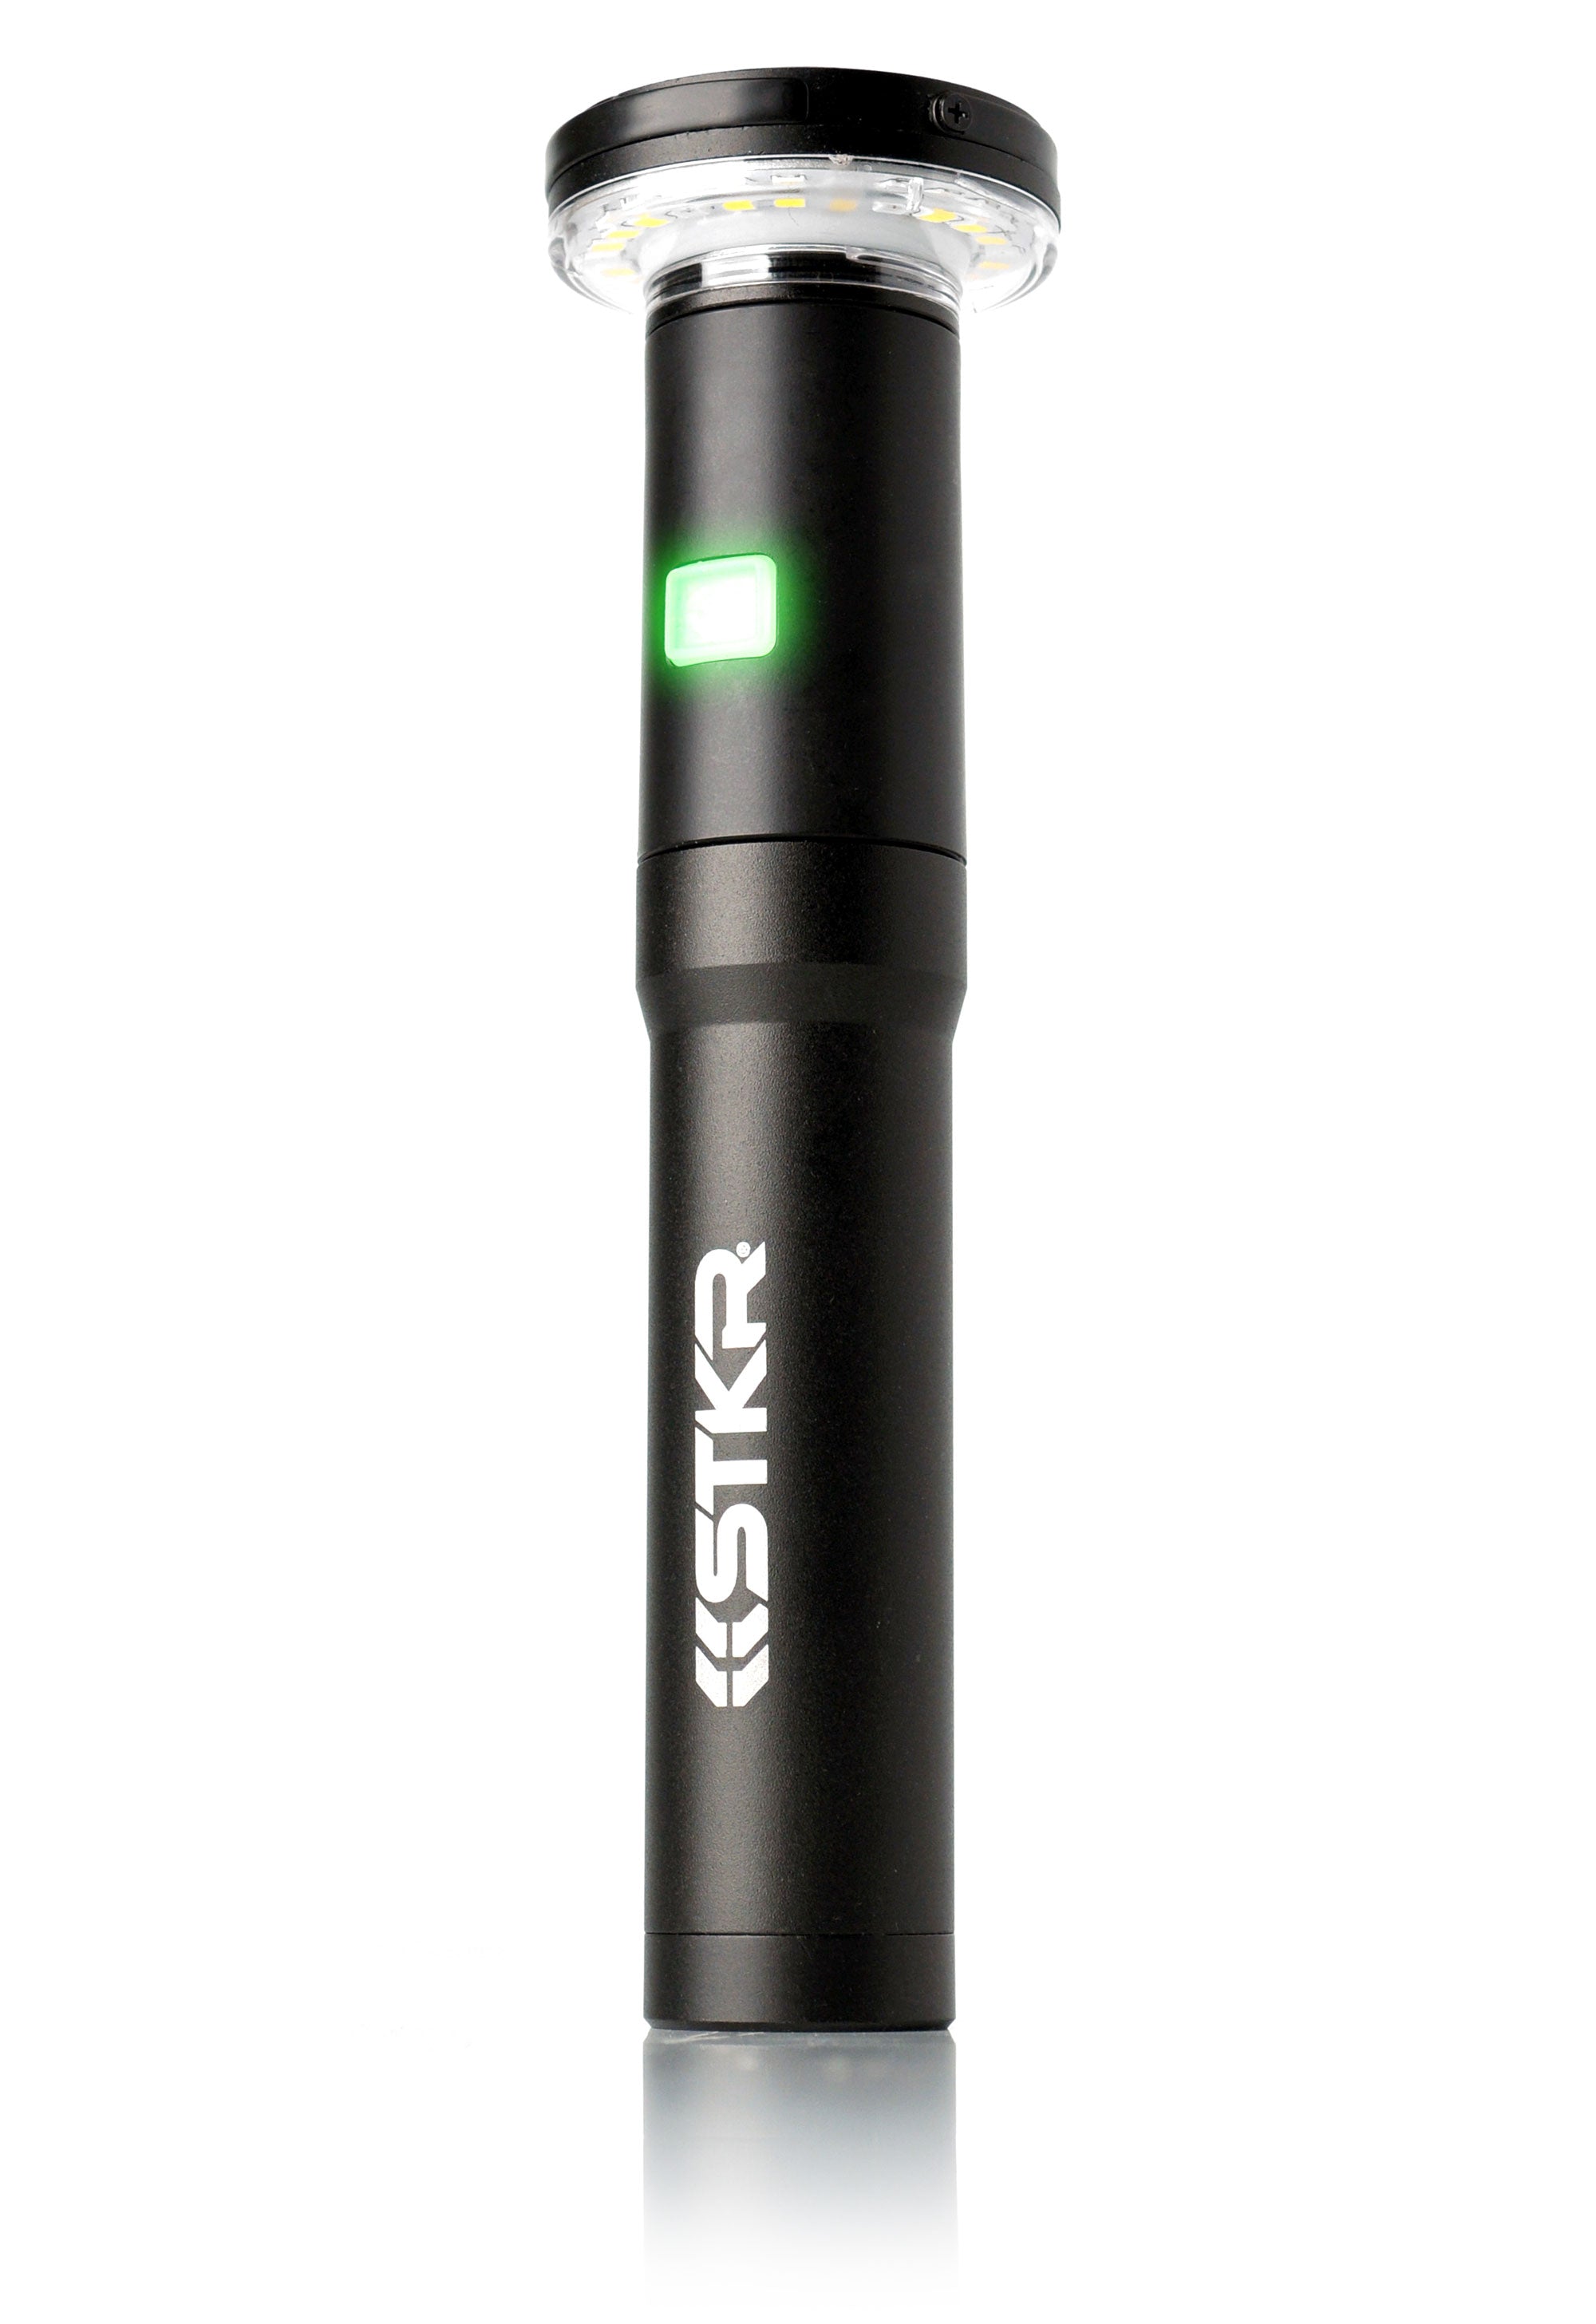 Indicateur au niveau de la batterie | Fli-Pro télescoping Light par STKR Concepts